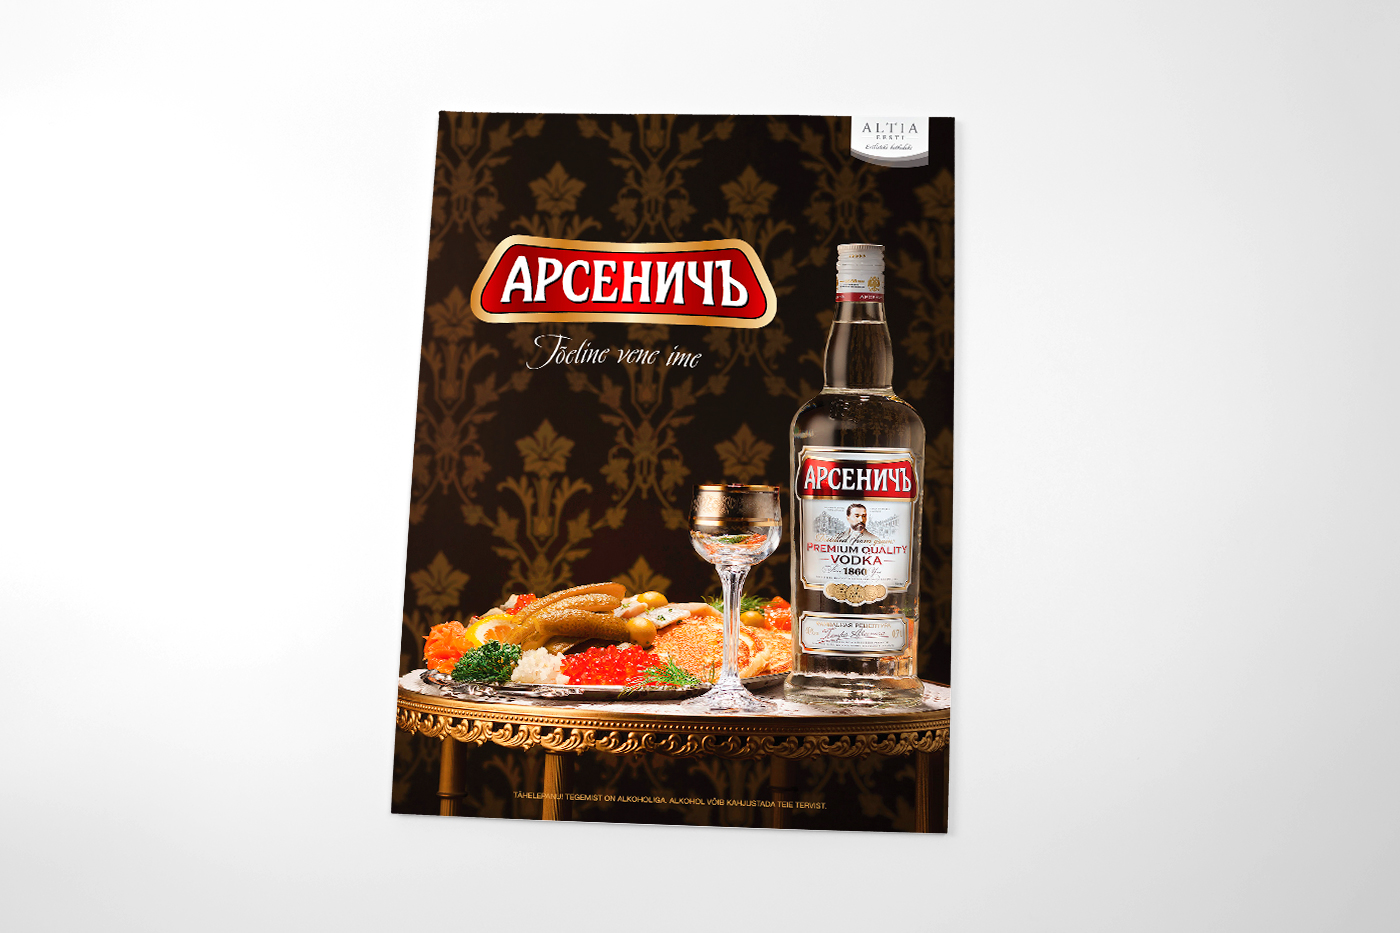 Arsenitch Vodka – Launch